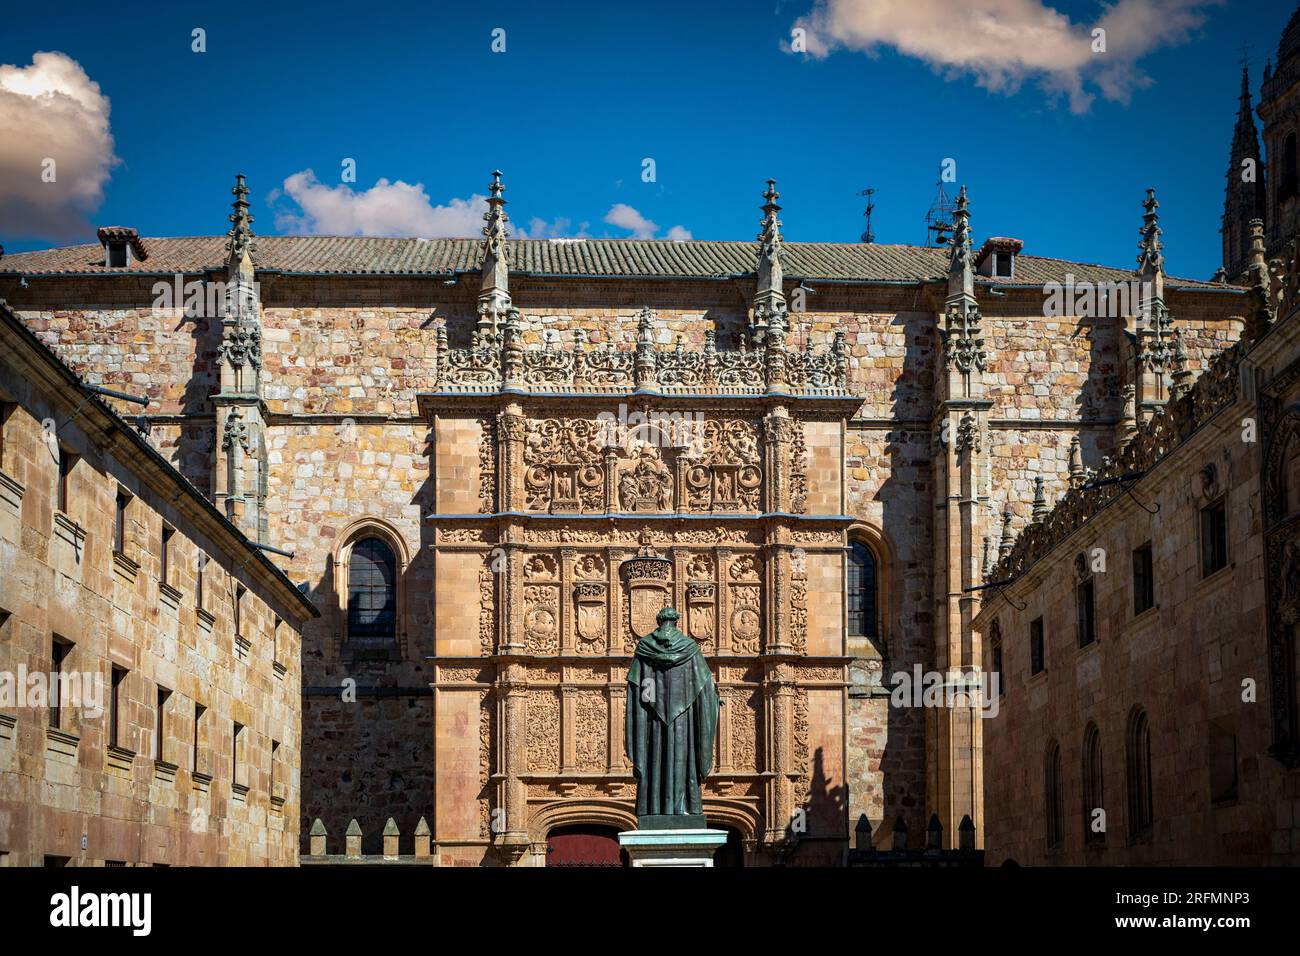 Vista impressionante dal Patio de las Escuelas della facciata dell'Università di Salamanca, Castilla y Len, con la scultura di Fray Luis de Leon Foto Stock